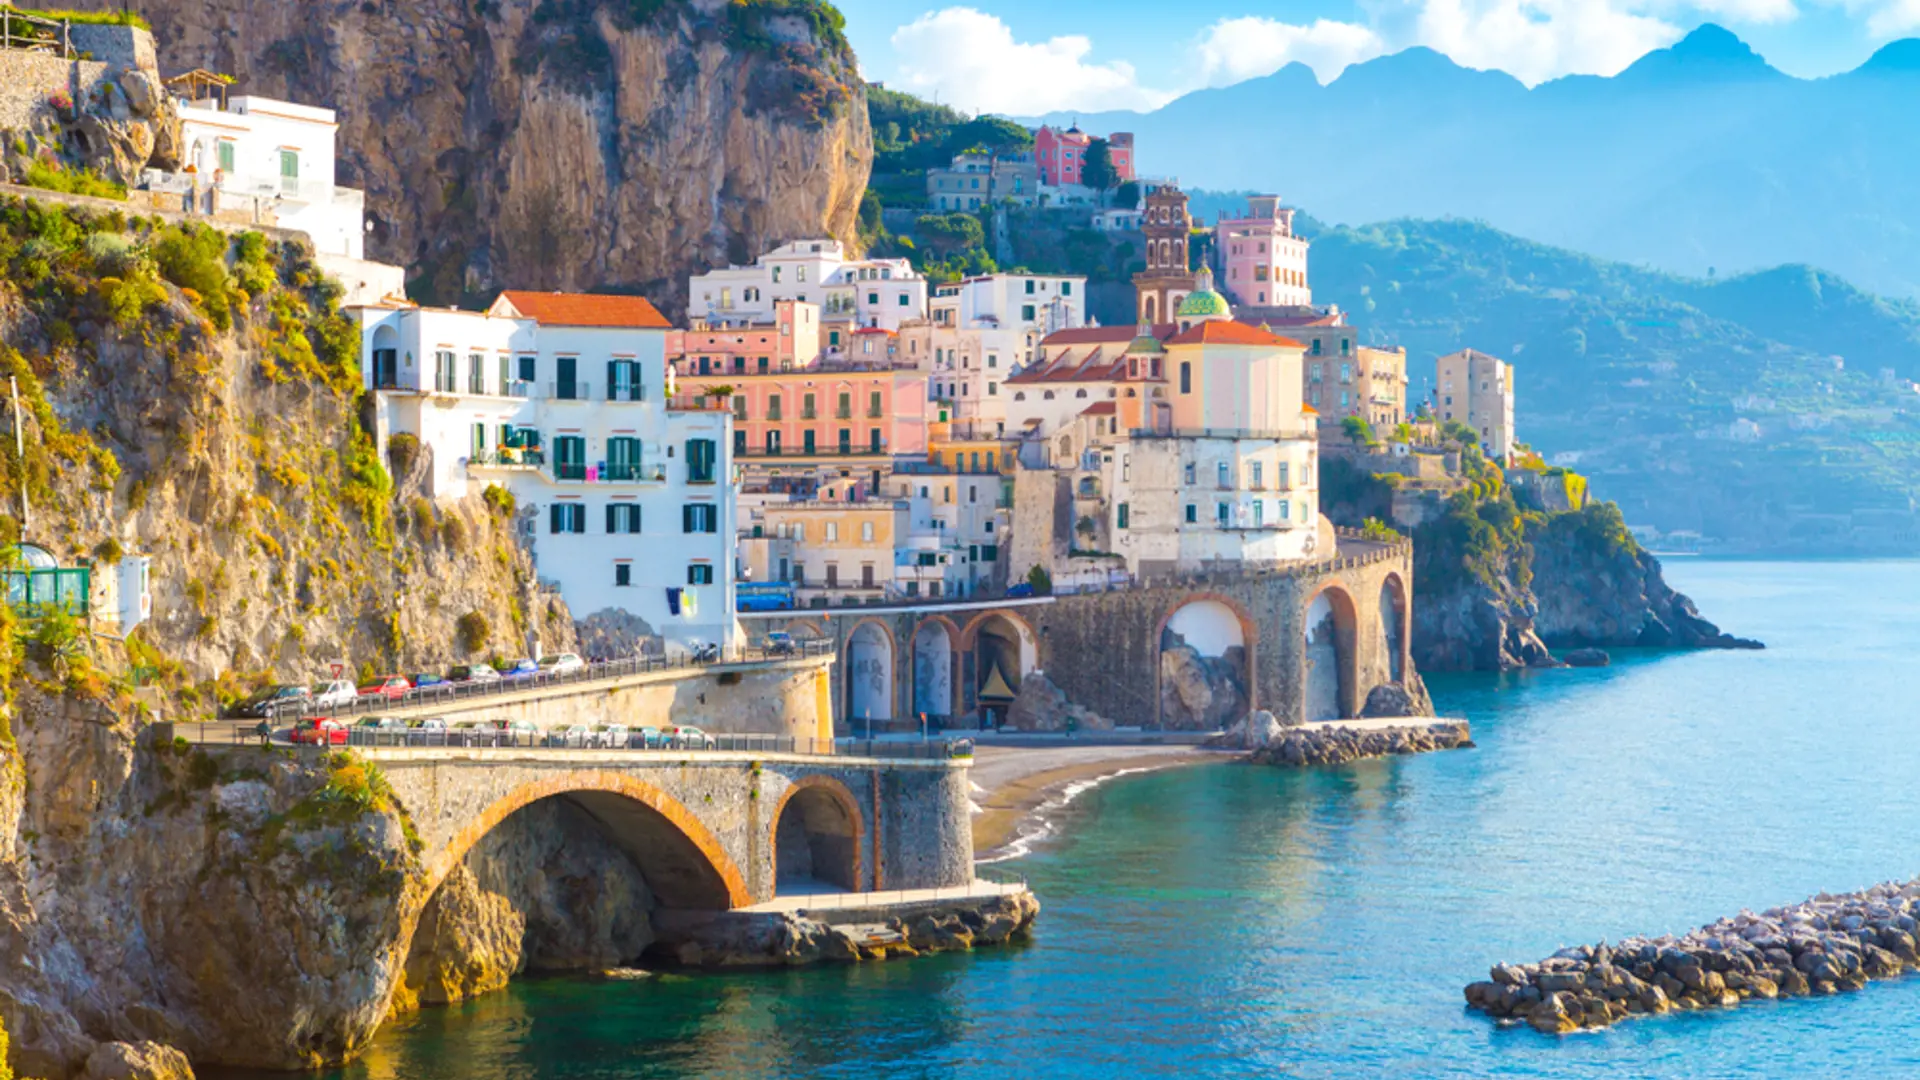 Resan börjar på Amalfikusten, som utstrålar italiensk charm